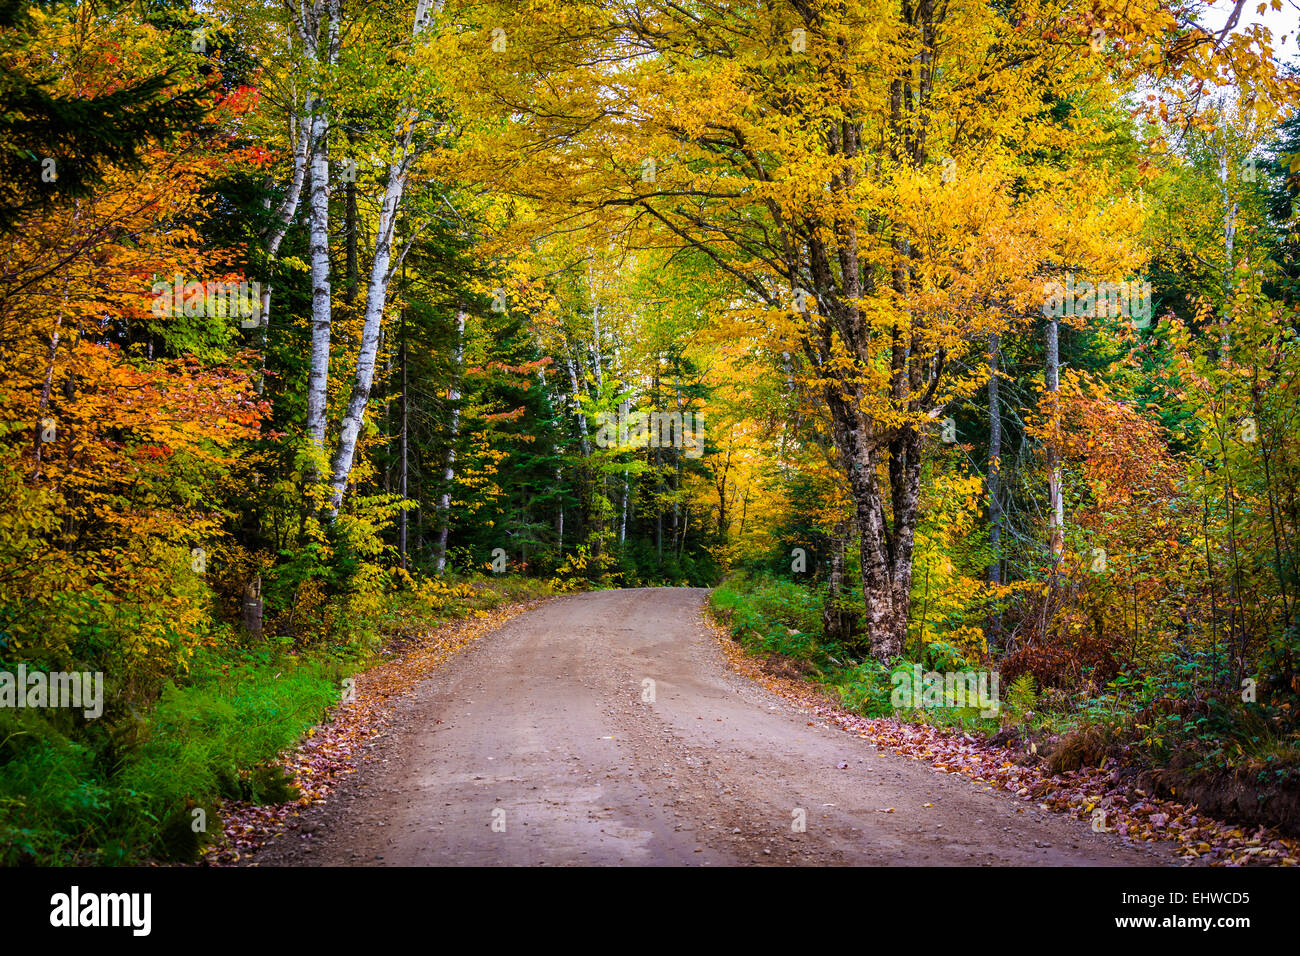 La couleur en automne le long d'un chemin de terre dans la région de White Mountain National Forest, New Hampshire. Banque D'Images